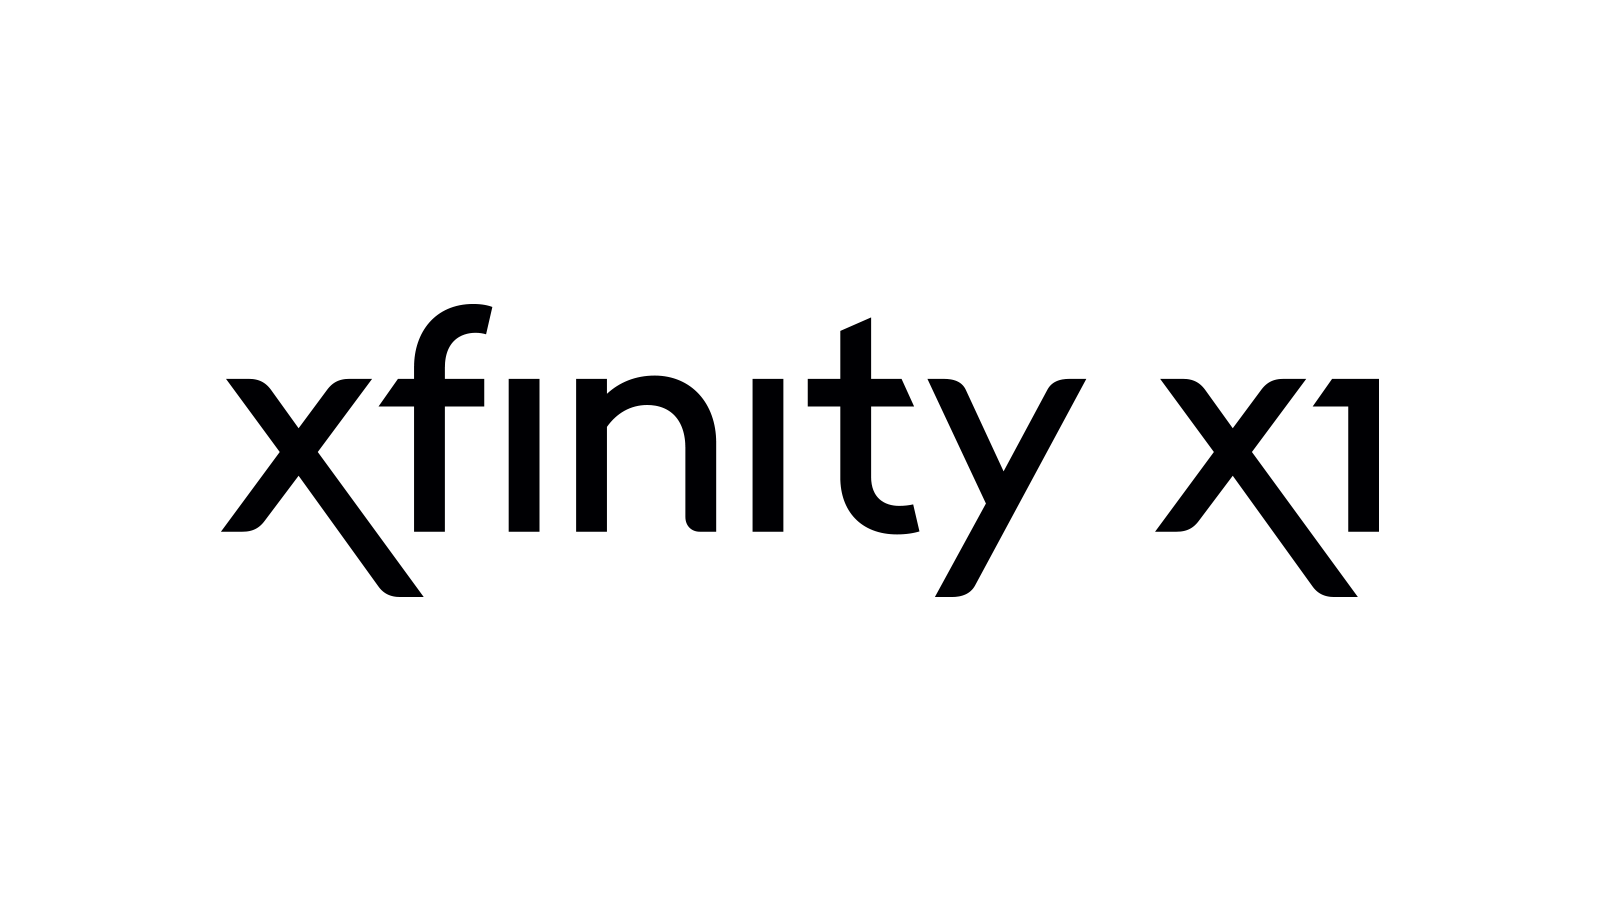 XFINITY.com Logo - More Logos